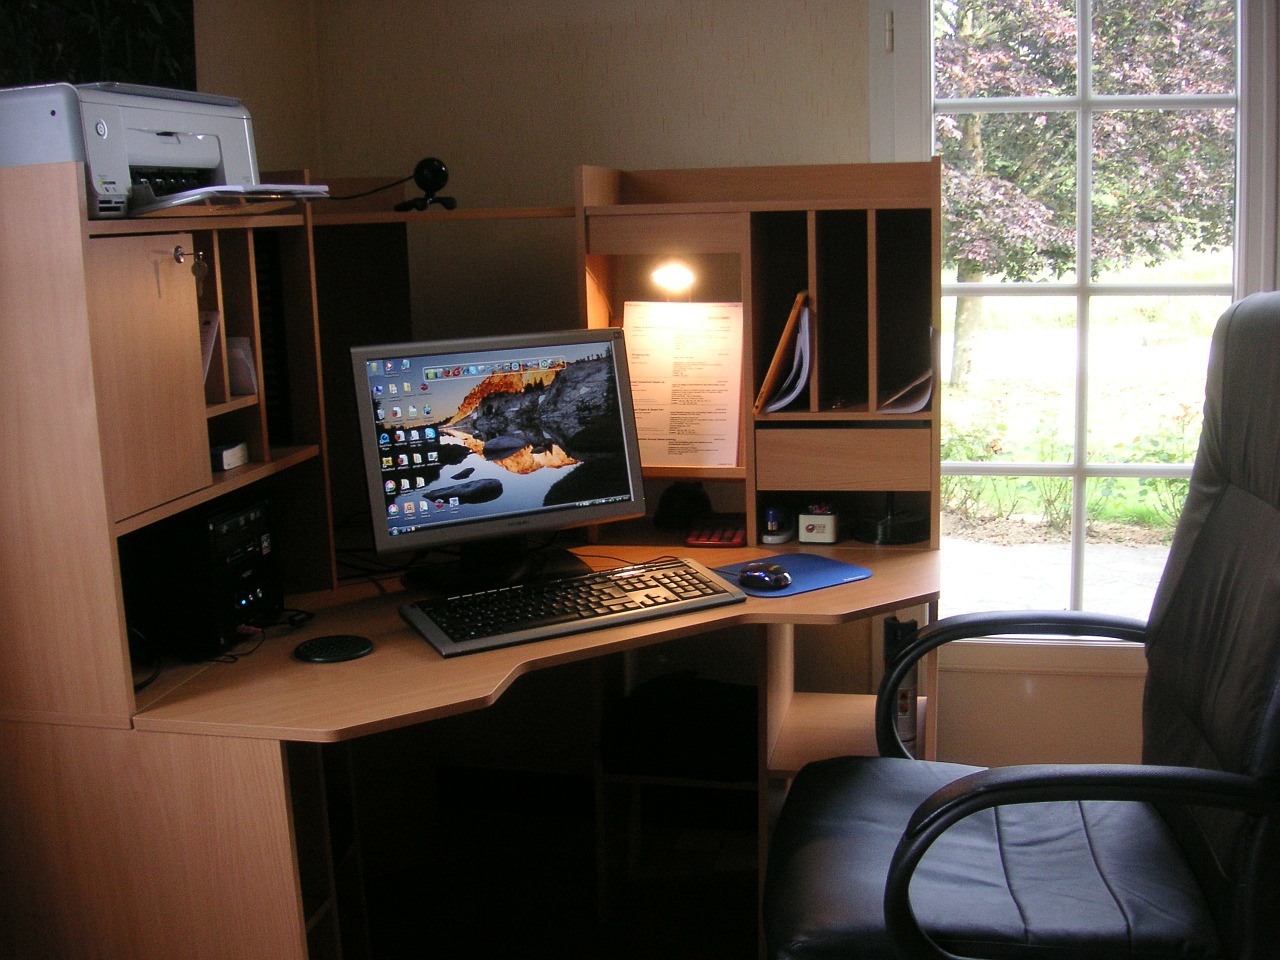  Home Office desk